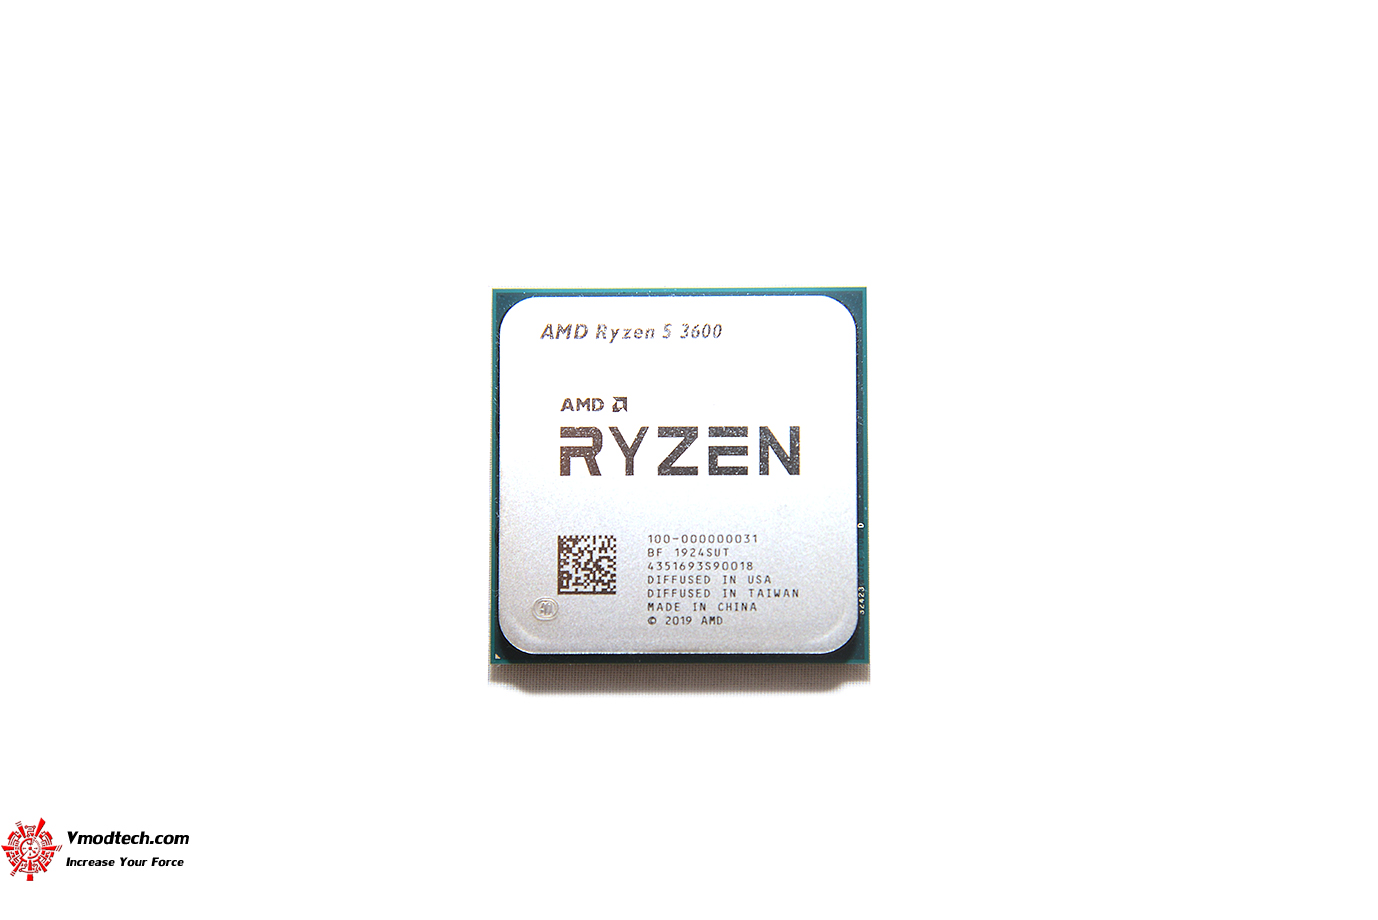 dsc 8952 AMD RYZEN 5 3600 PROCESSOR REVIEW 